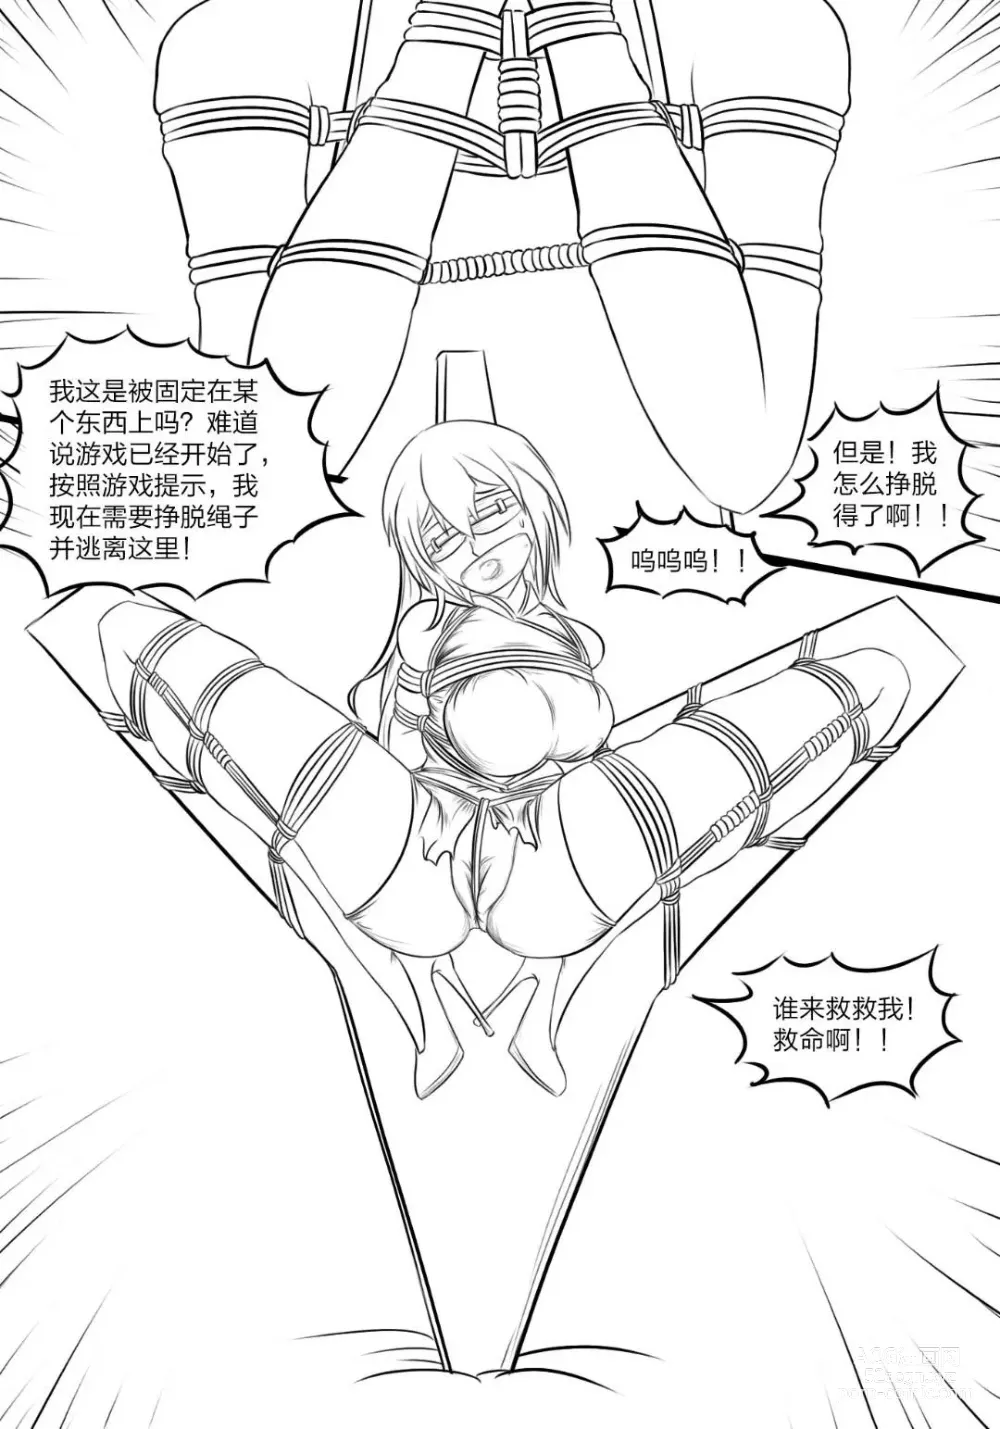 Page 7 of doujinshi 《被困游戏世界》